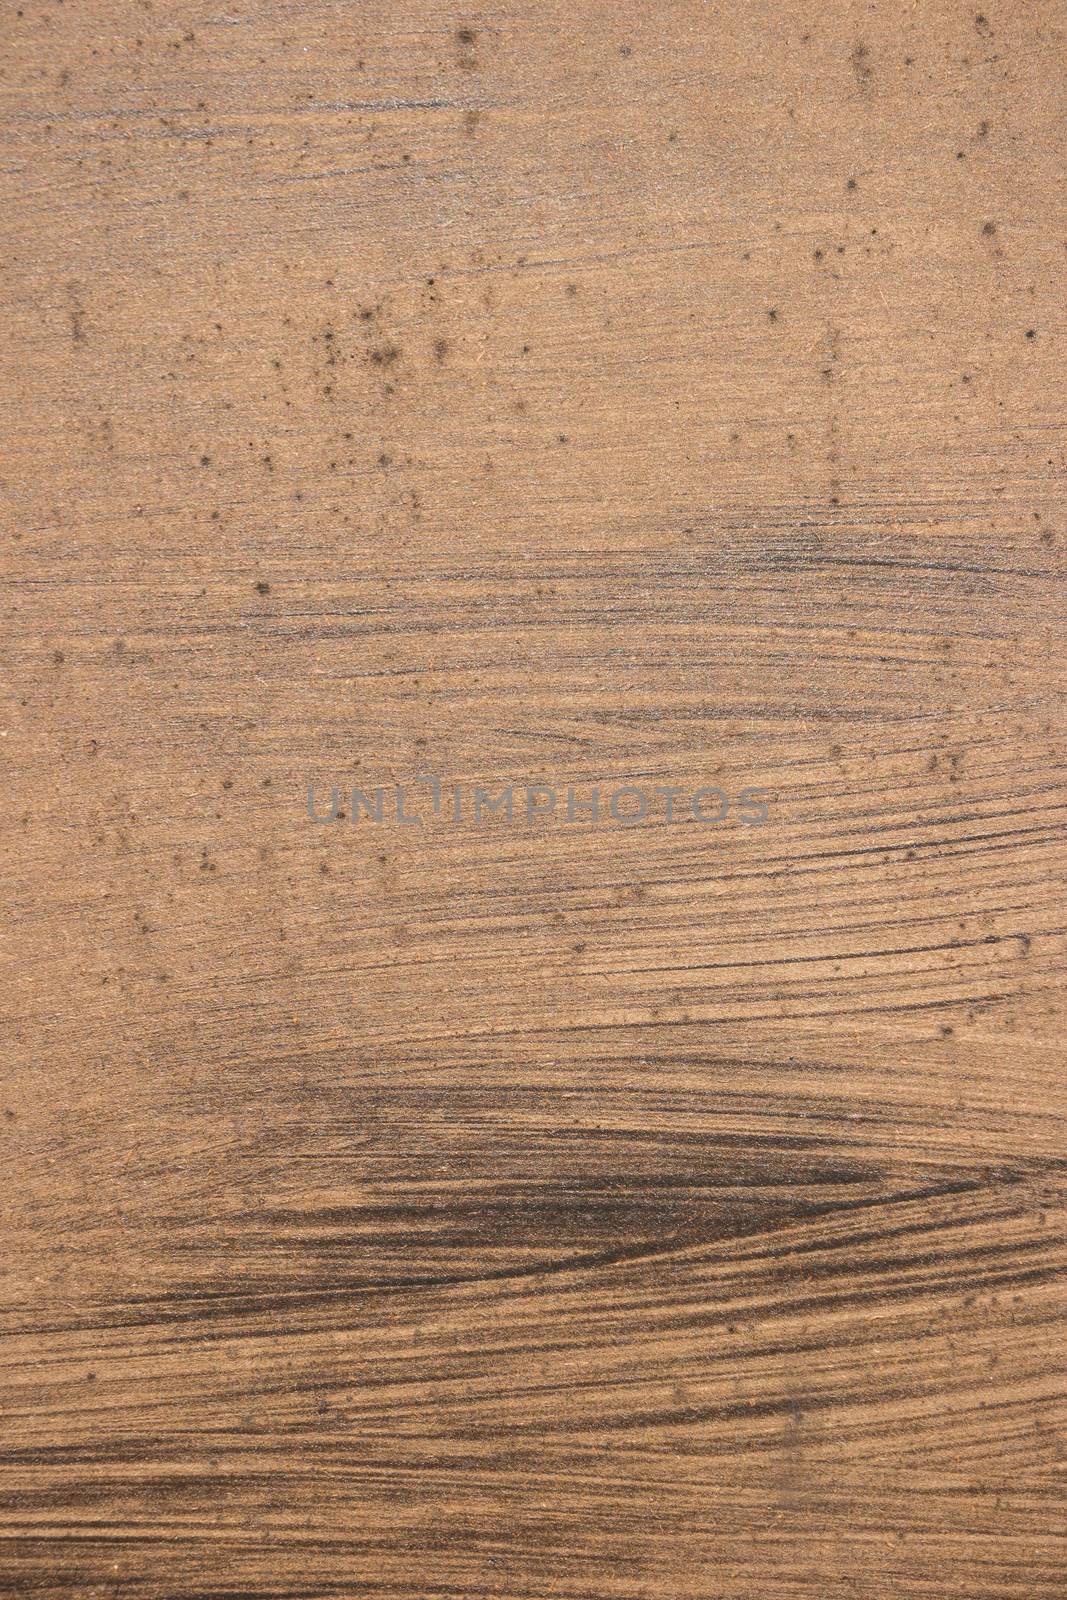 Closeup texture of wood background closeup.